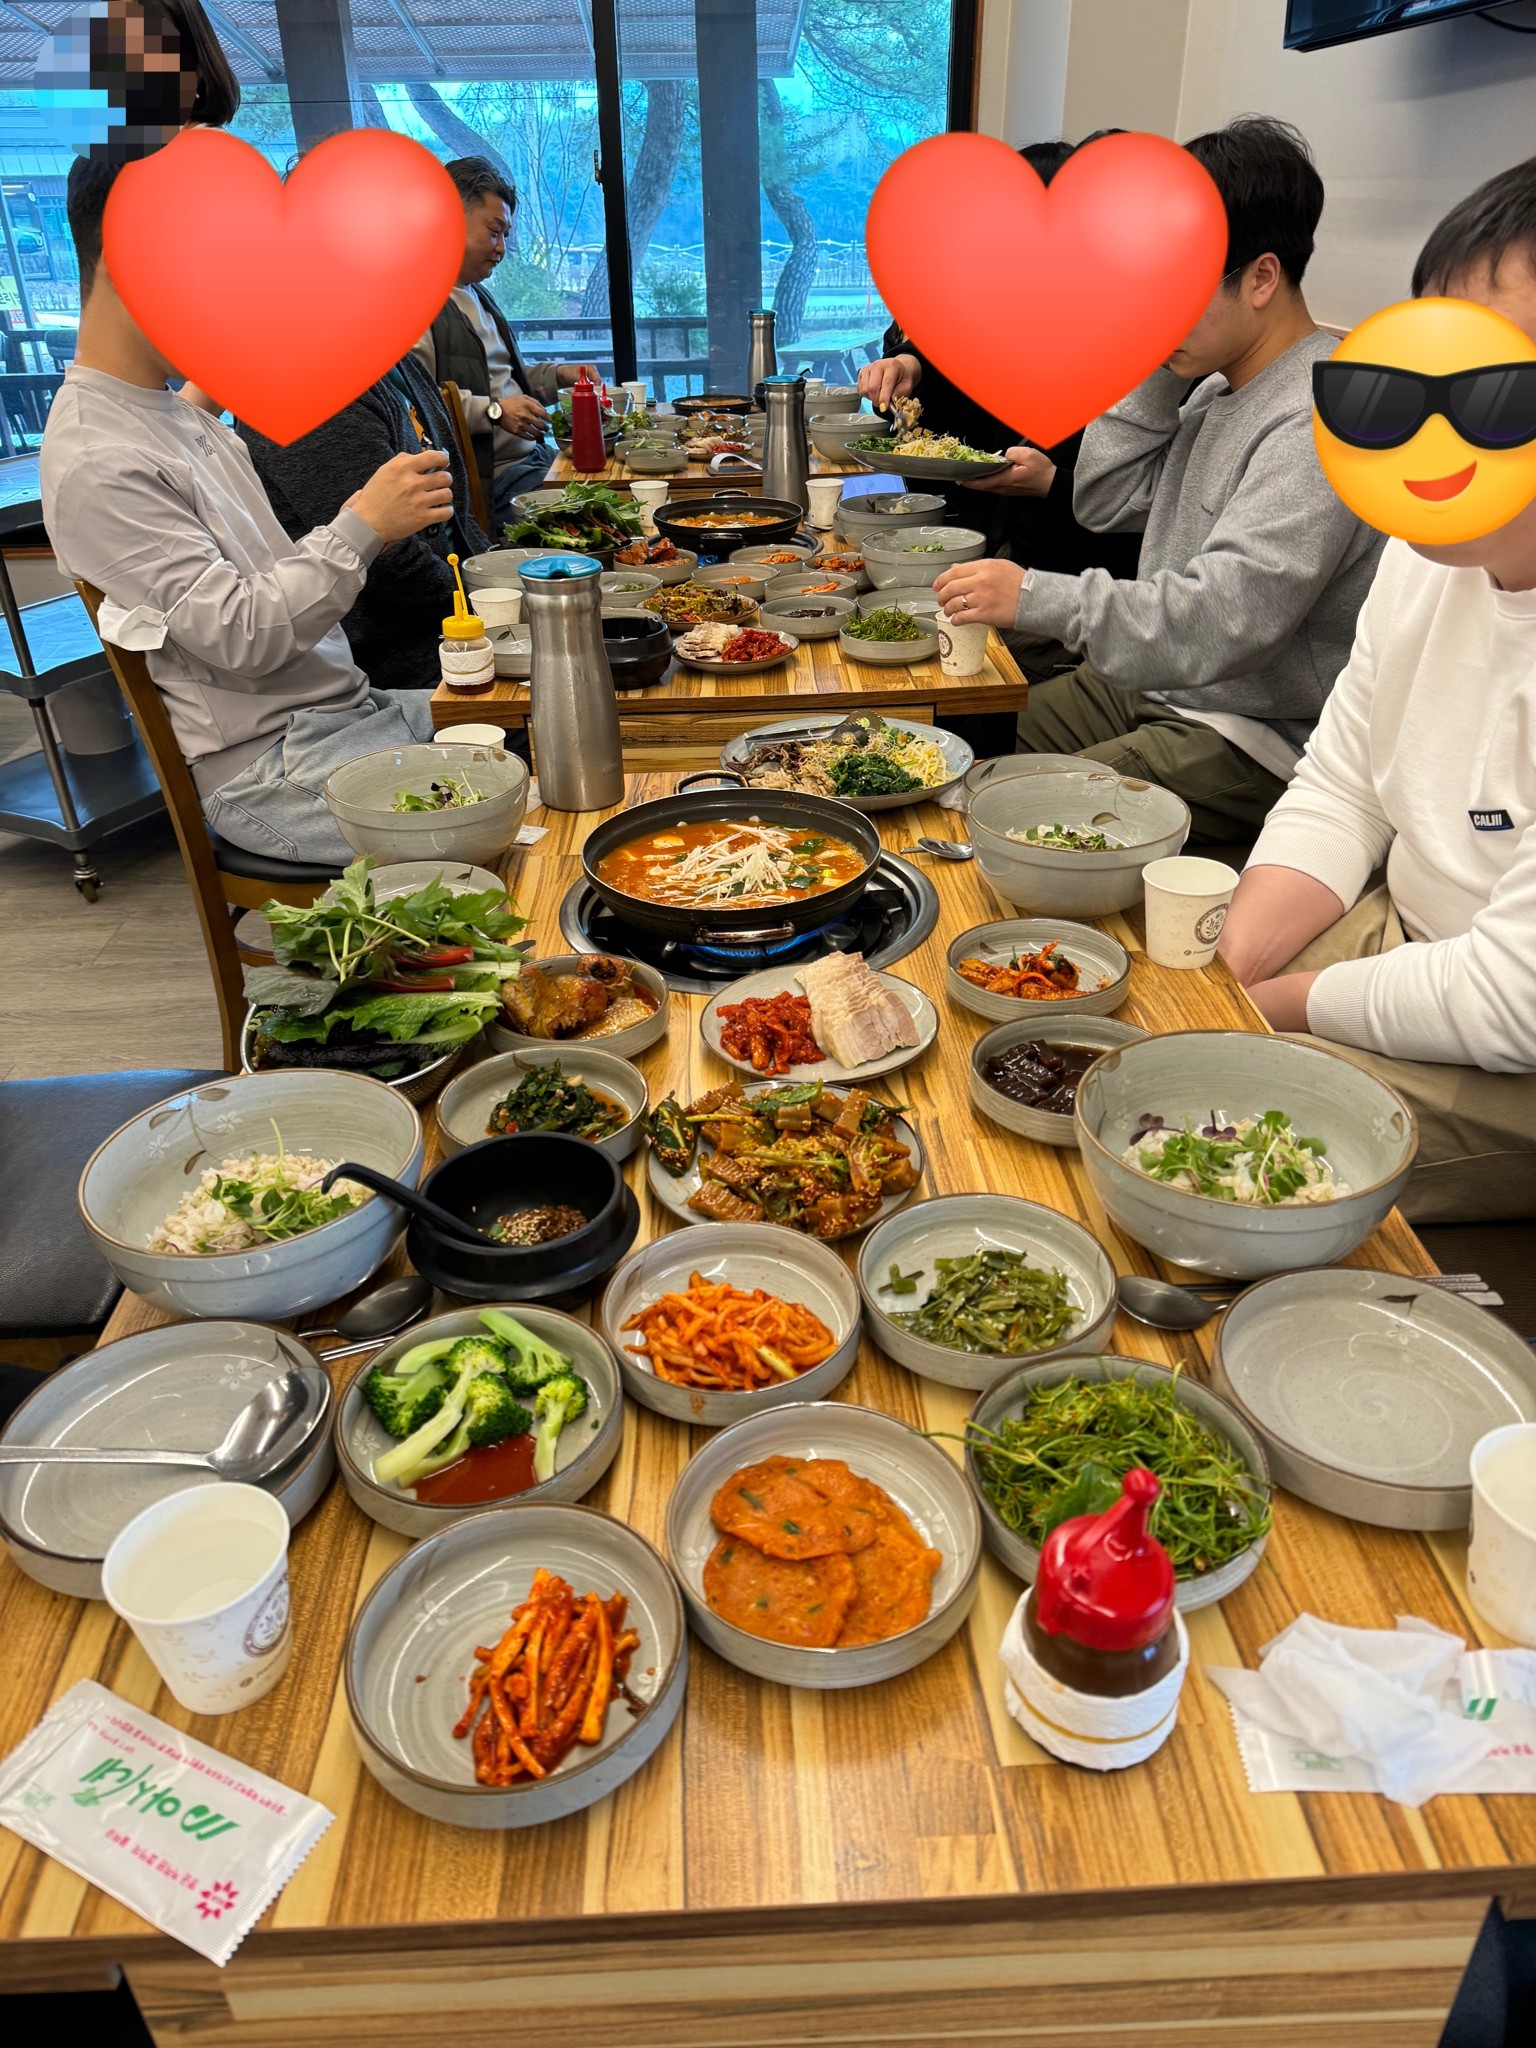 식사, 채소, 테이블, 음식이(가) 표시된 사진

자동 생성된 설명